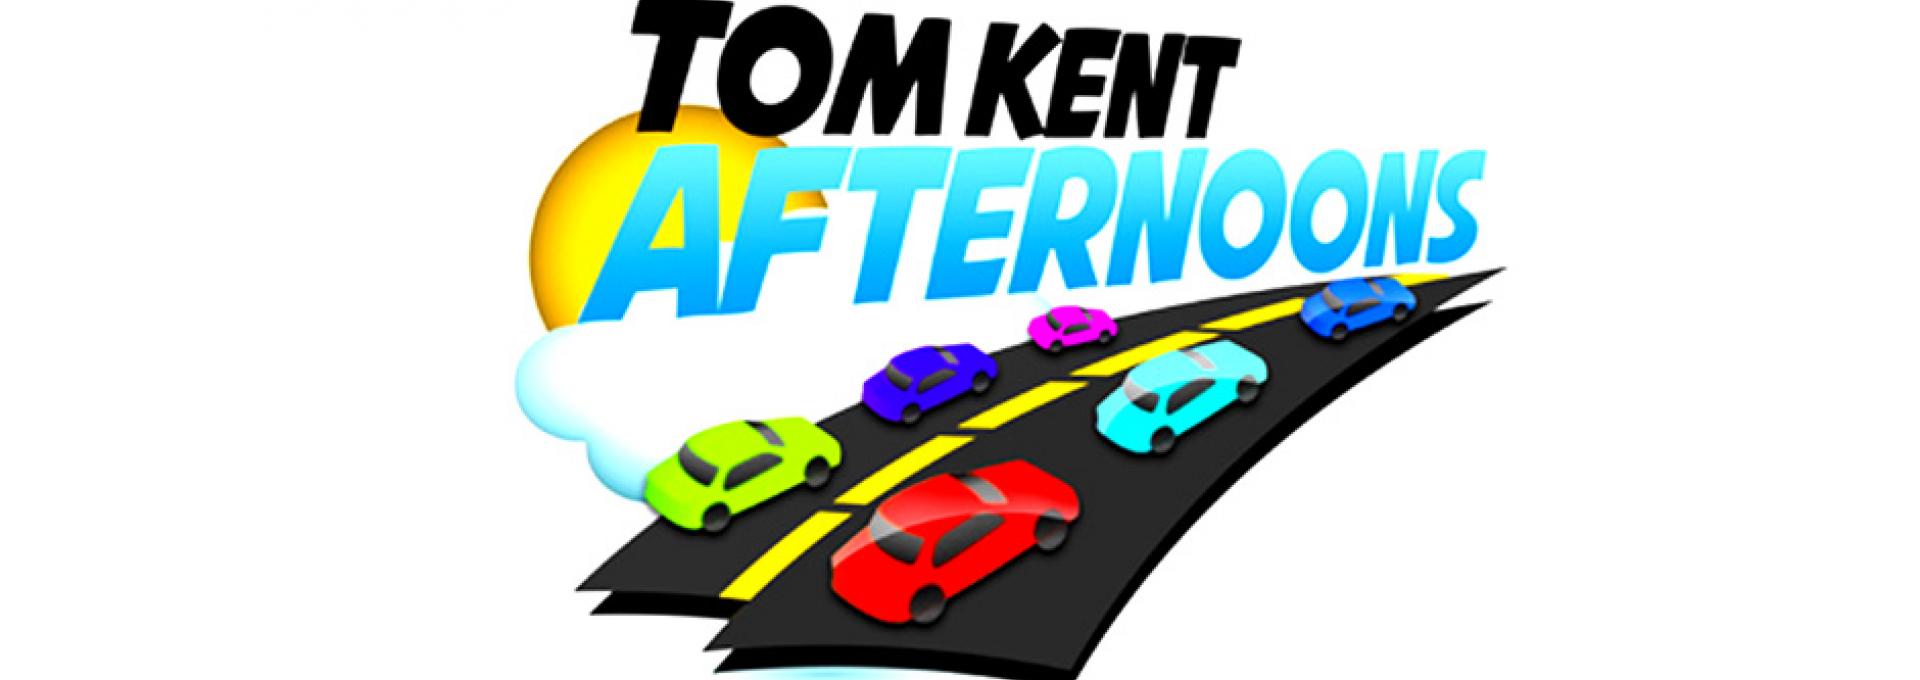 TOM KENT AFTERNOONS hero